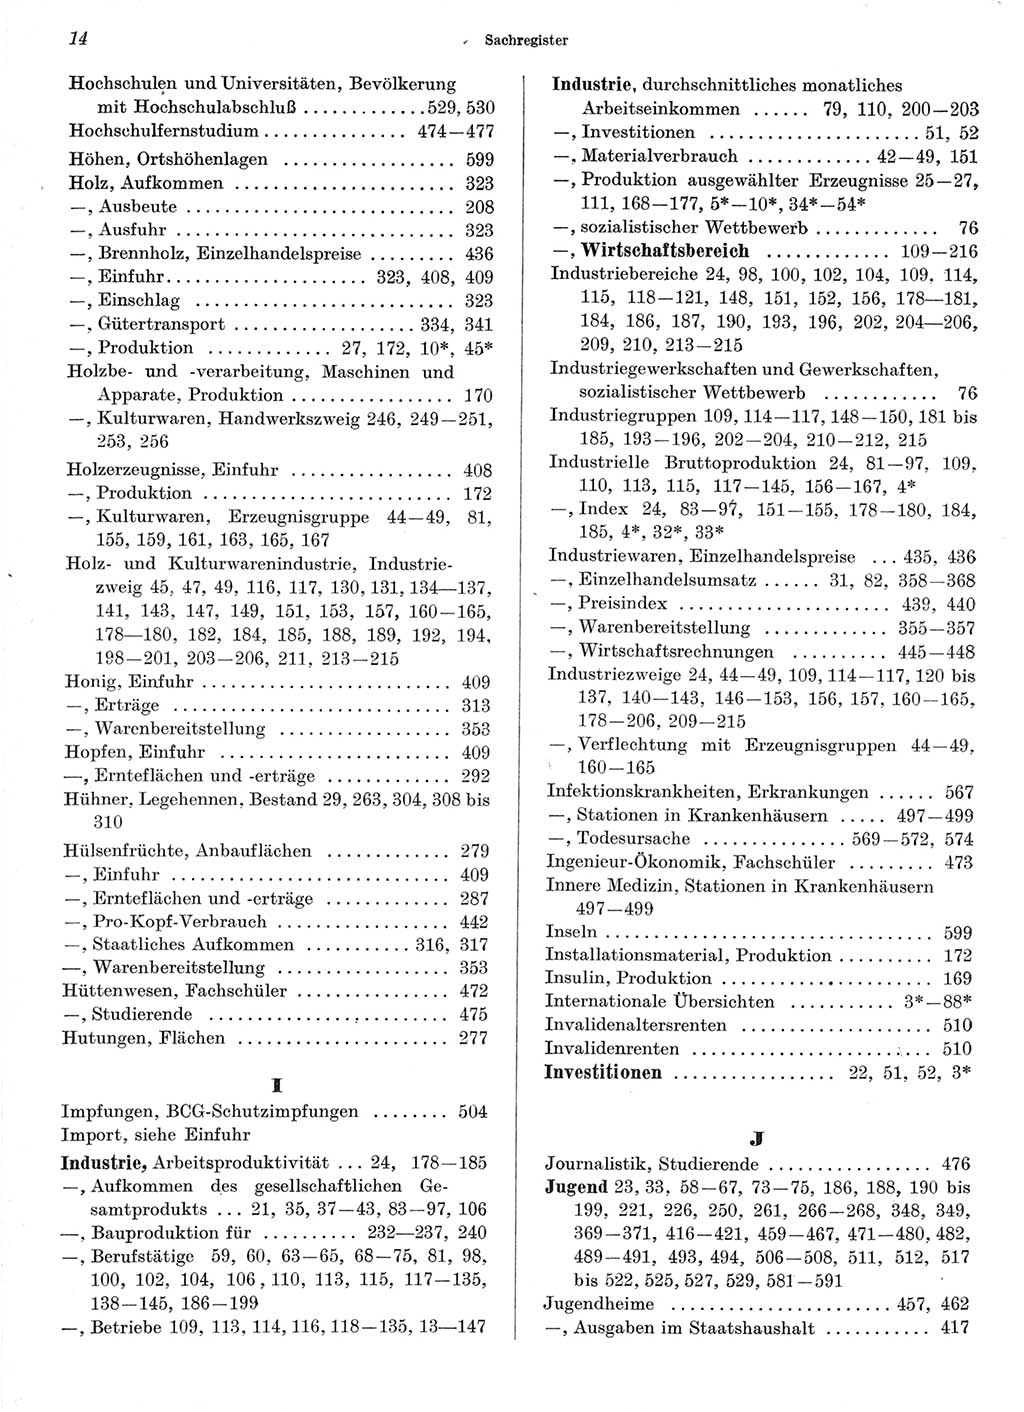 Statistisches Jahrbuch der Deutschen Demokratischen Republik (DDR) 1966, Seite 14 (Stat. Jb. DDR 1966, S. 14)